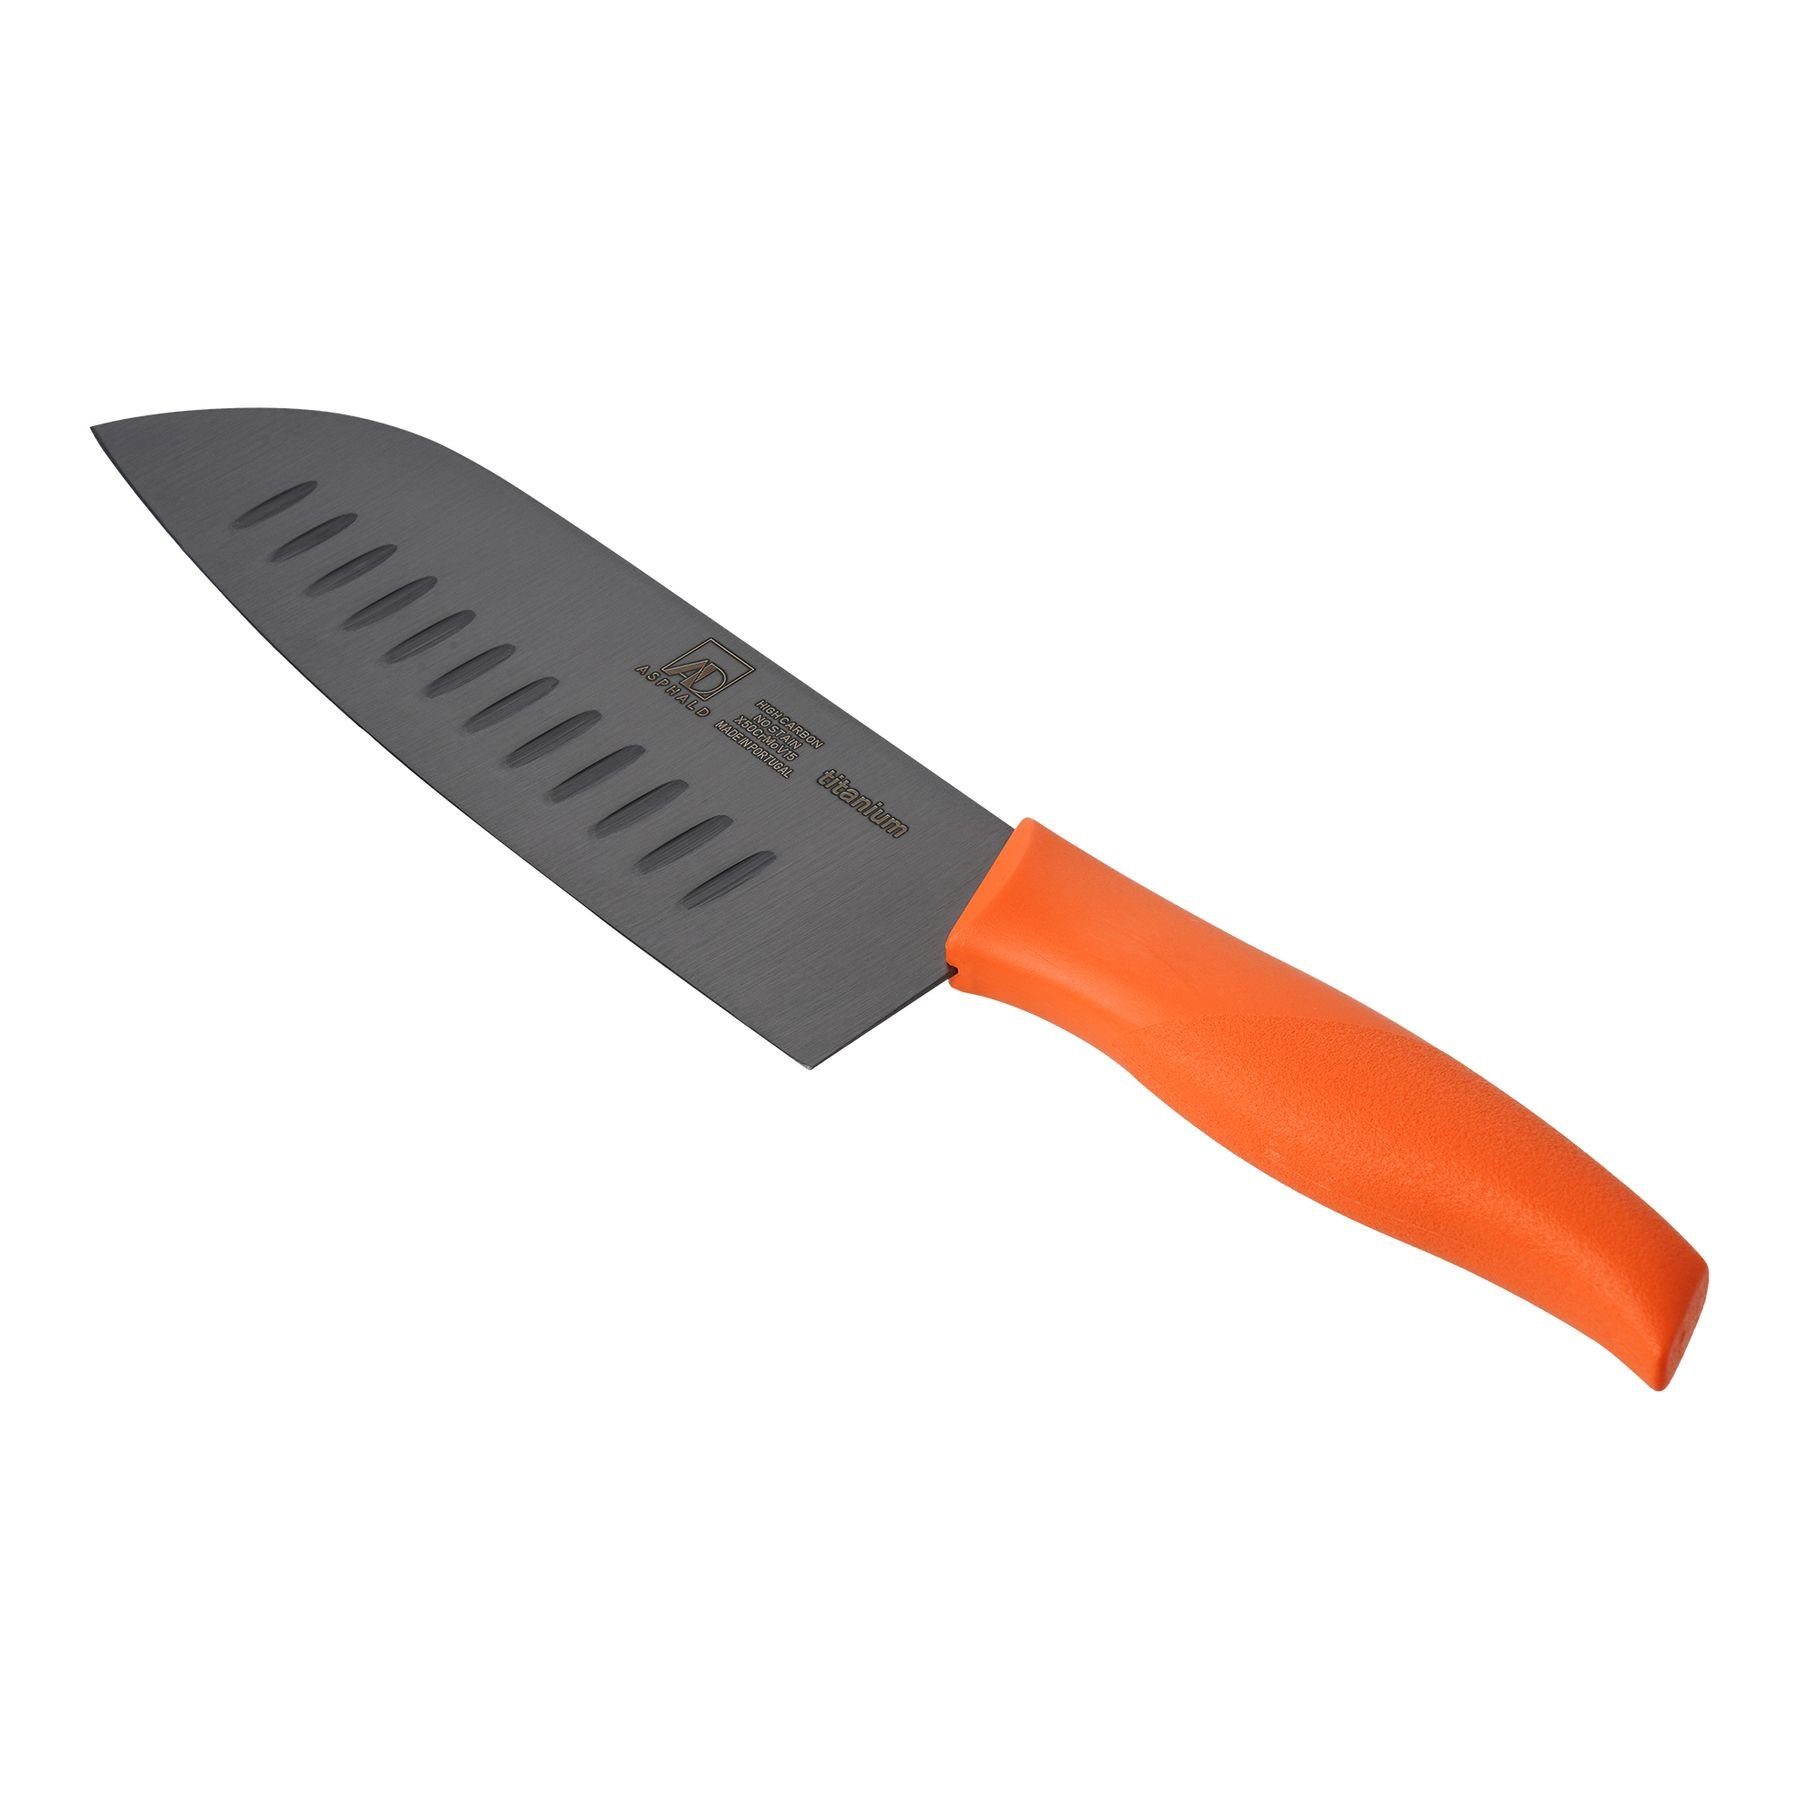 Asphald Allzweckmesser Santoku Messer Kochmesser Titan Klinge Orange Griff Titanmesser, aus einem Stück geschmiedet